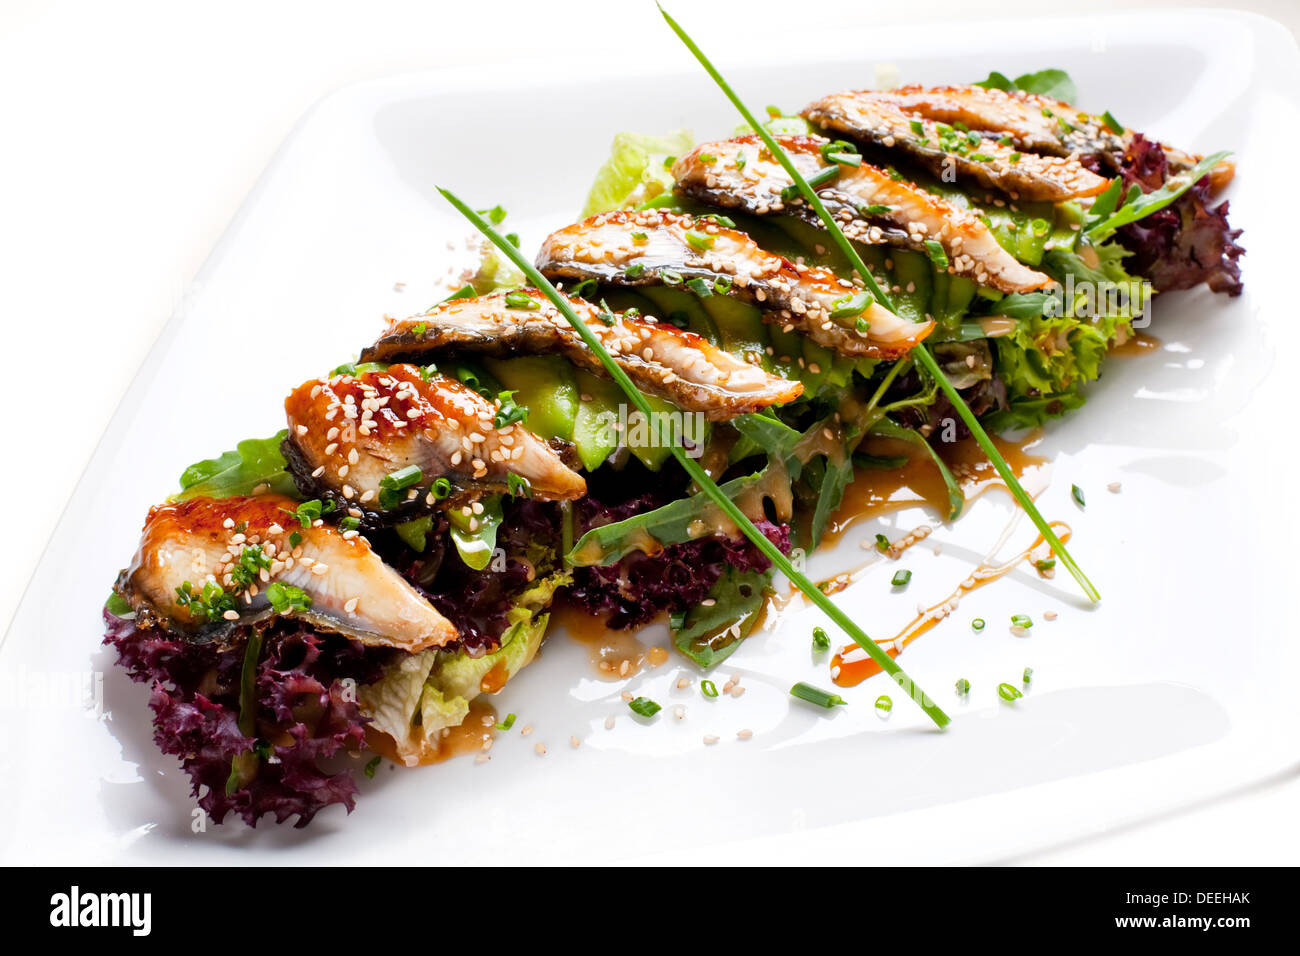 Leichte Mahlzeit von Aal. Salat mit Avocado, Aal, Salat und Sauce. Stockfoto